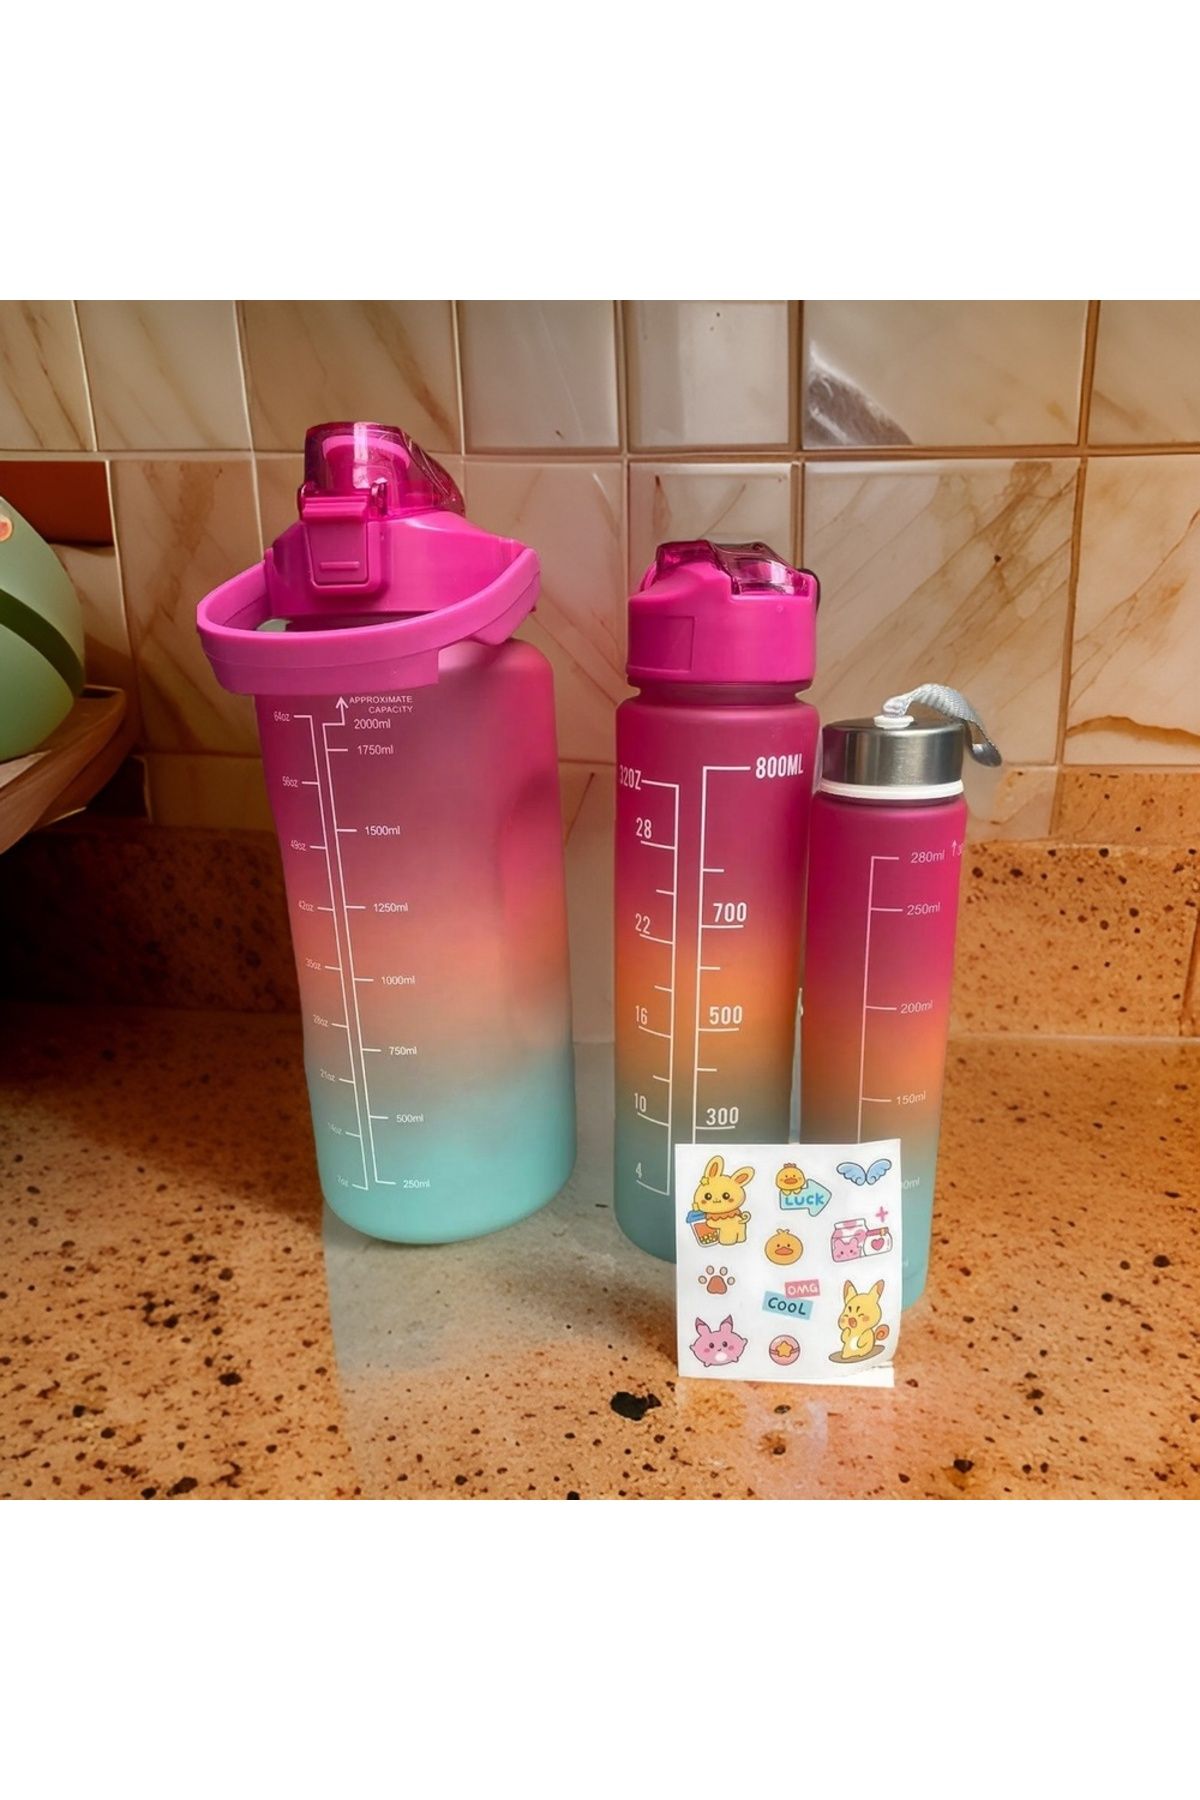 yesilcamsepeti 3’lü Motivasyonel Su Matarası, 2 Litre 750 Ml 300 Ml BPA İçermez Suluk (Pipetli ve Sticker Hediyeli)